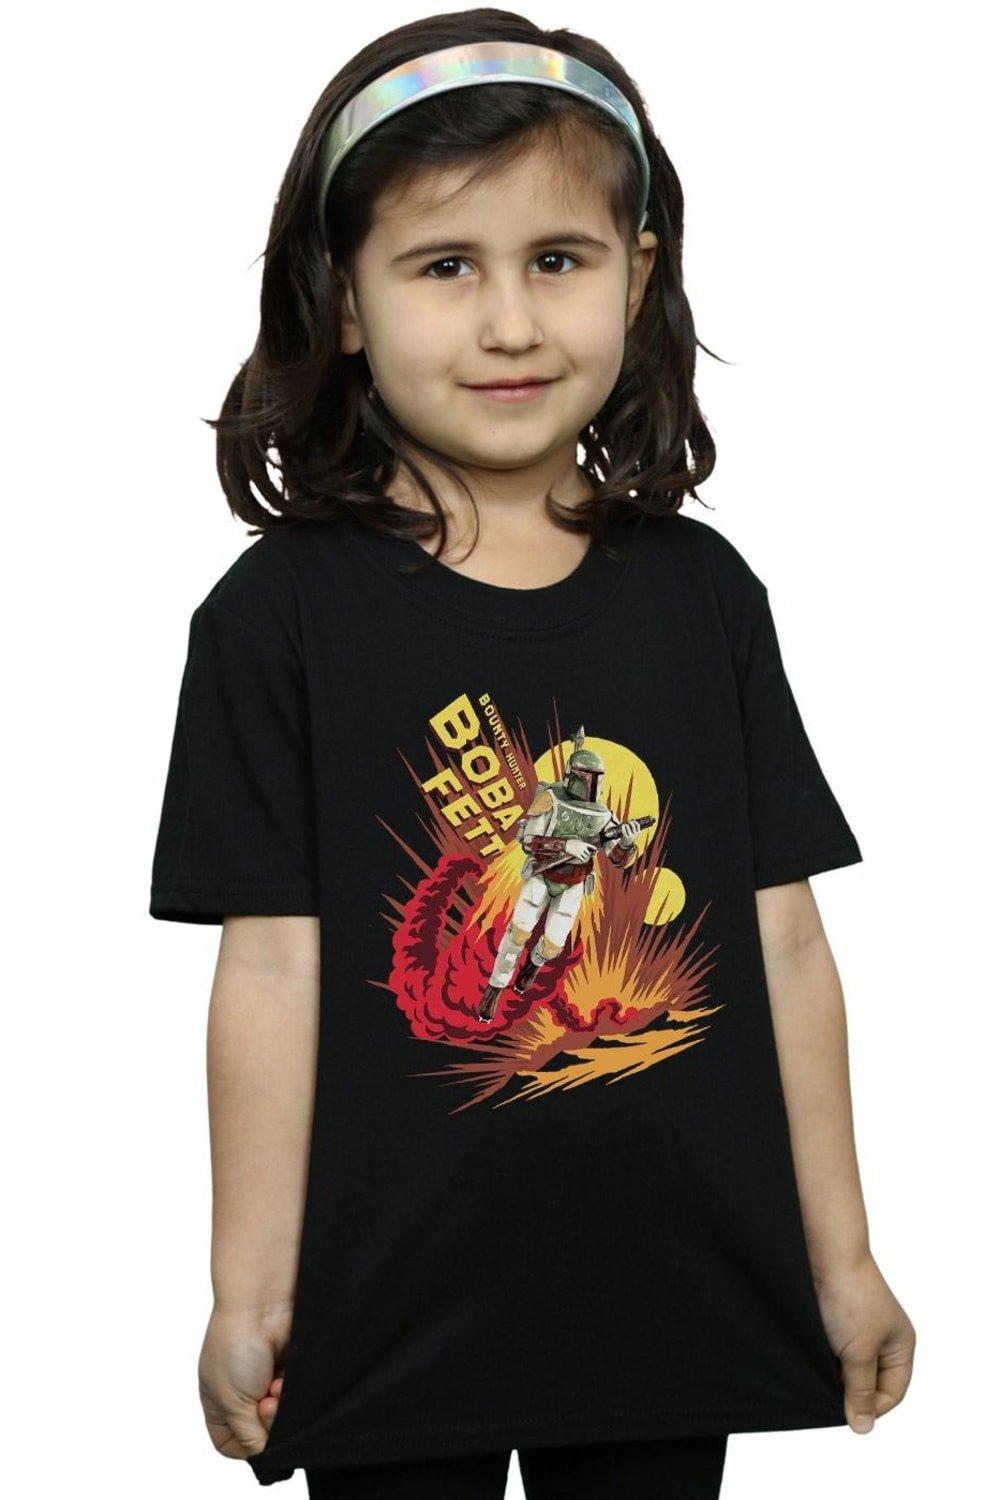 Boba Fett Rocket Powered Cotton T-Shirt